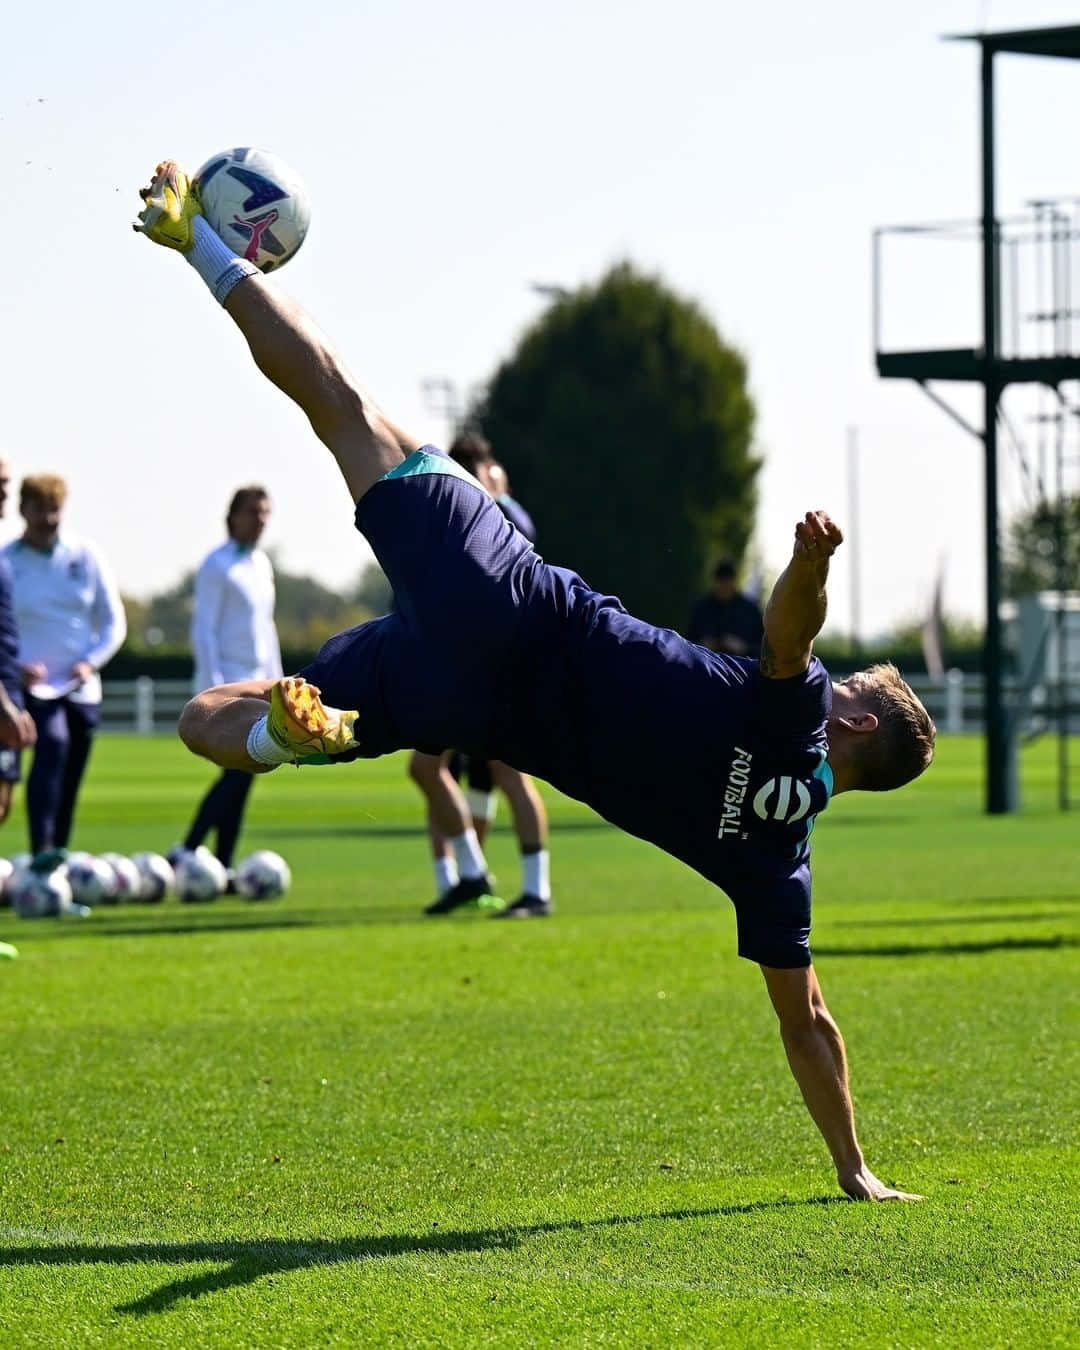 A Man Doing A Flip On A Soccer Ball